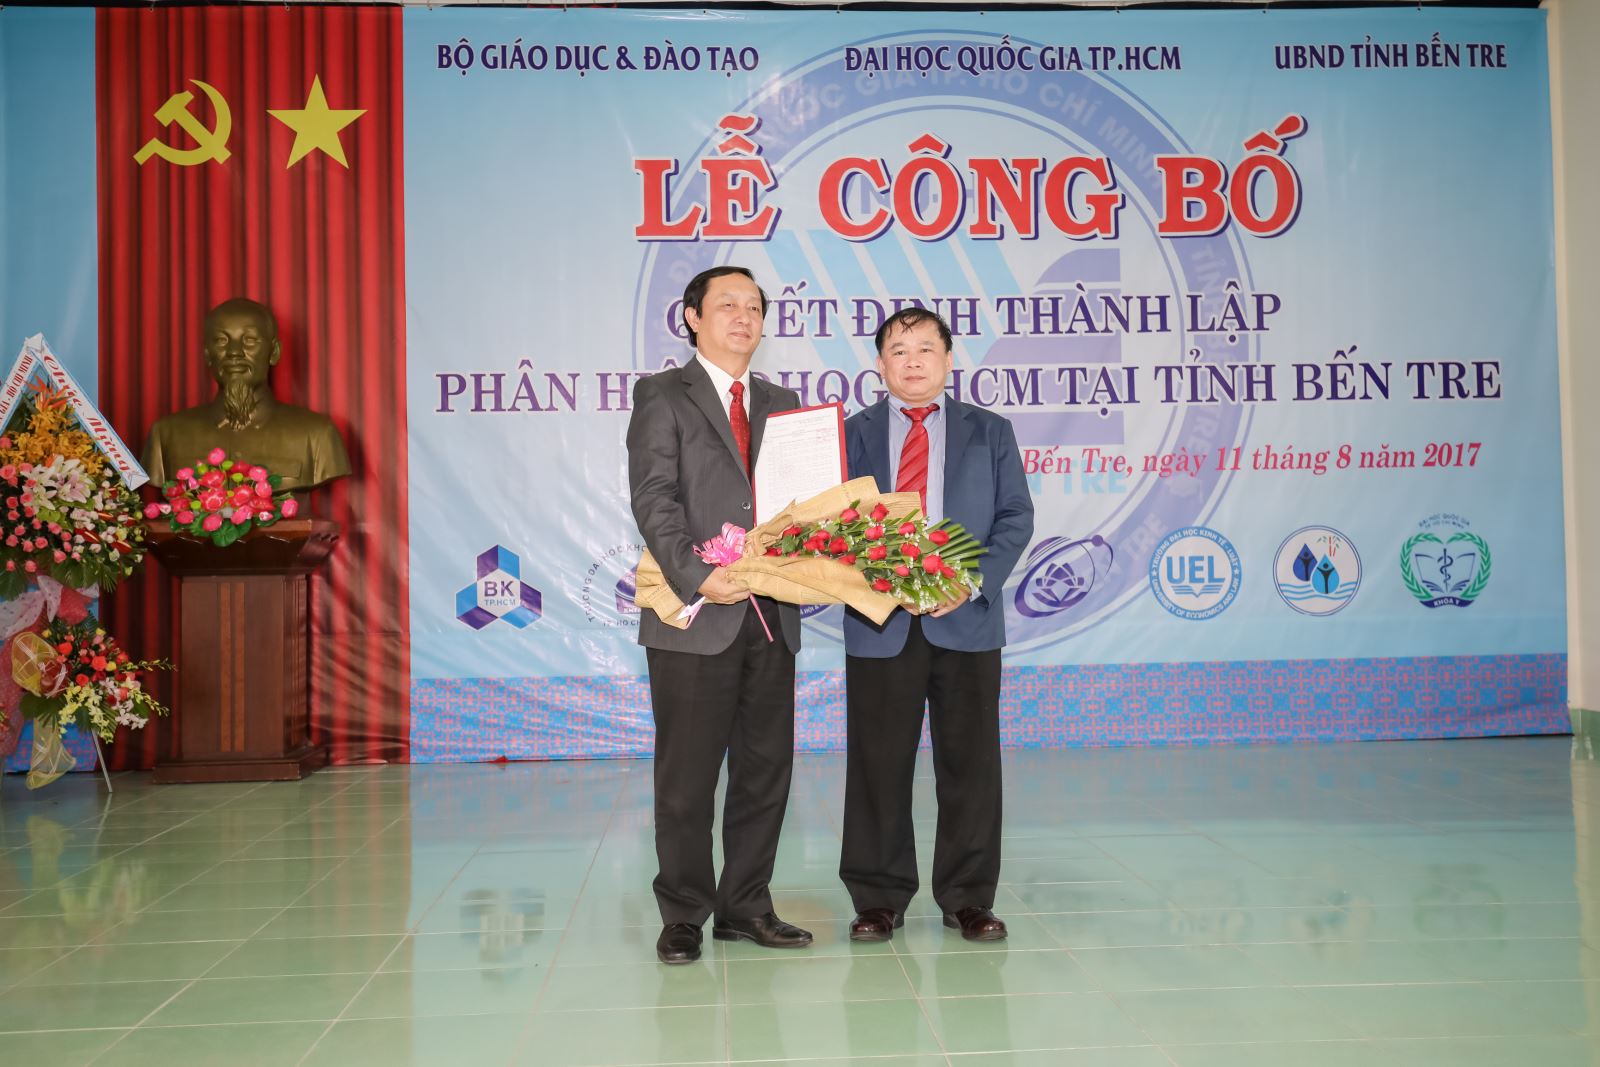 PGS. TS. Vũ Phan Tú giữ chức vụ Giám đốc Phân hiệu Đại học Quốc gia Thành phố Hồ Chí Minh tại tỉnh Bến Tre